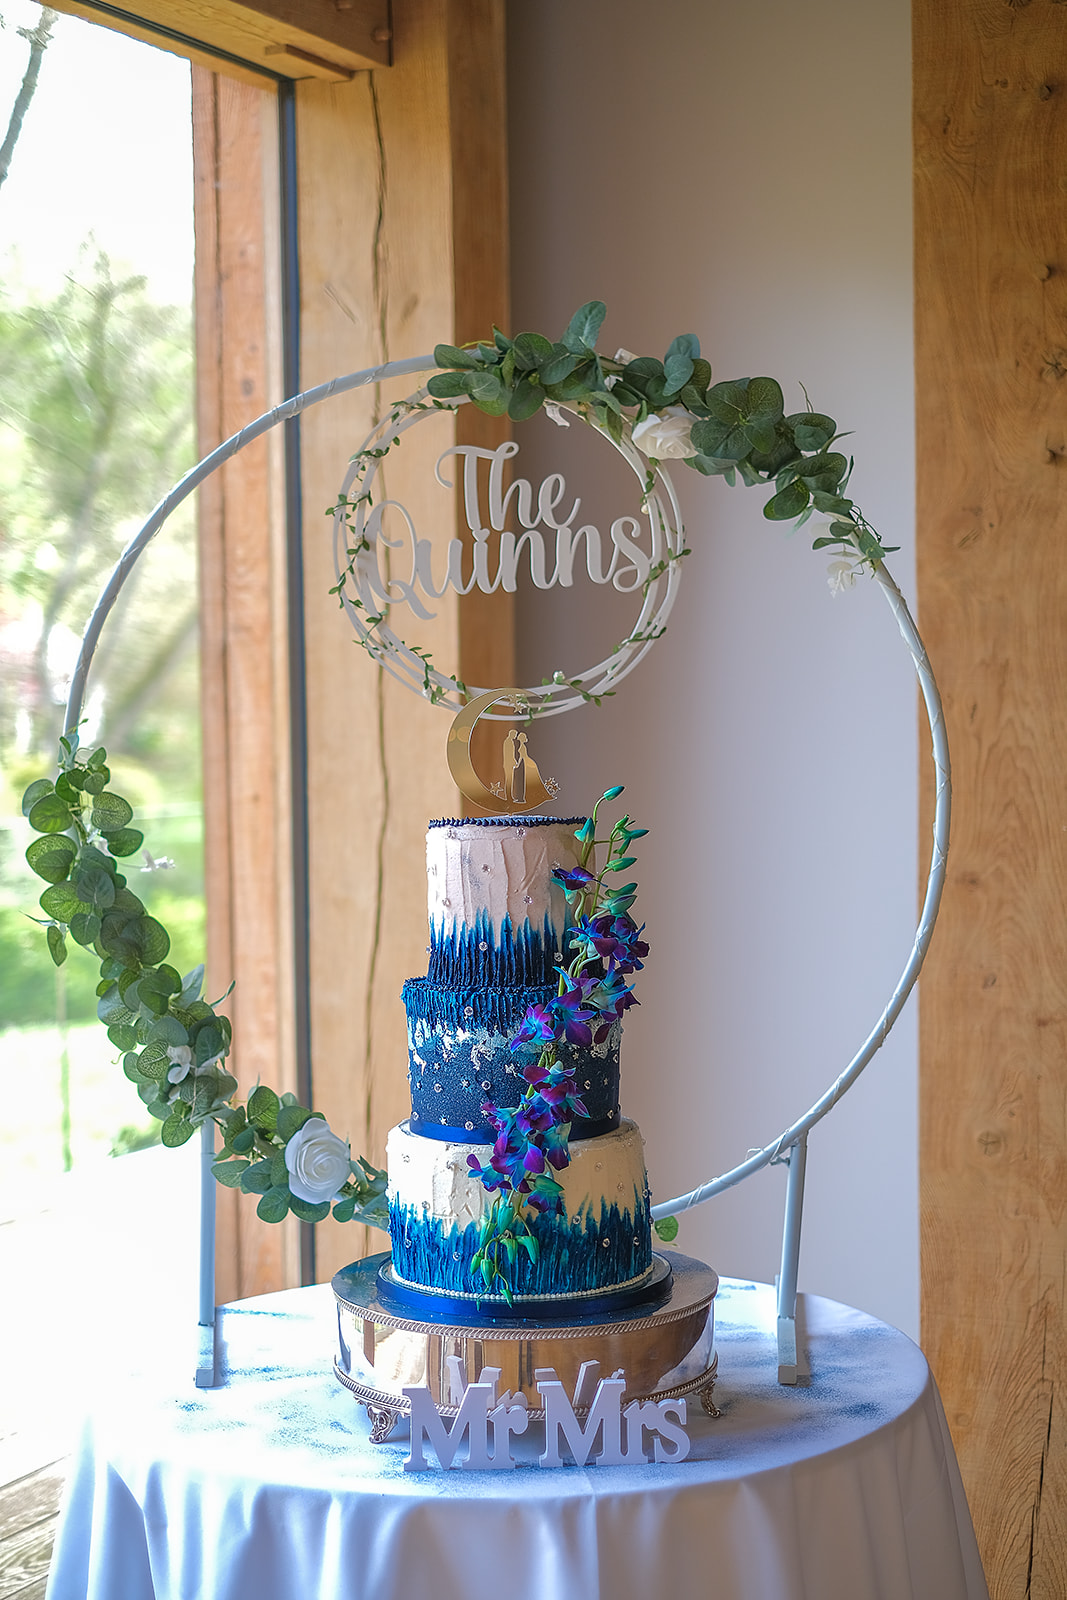 galaxy wedding cake - blue and white wedding cake - unique wedding cake